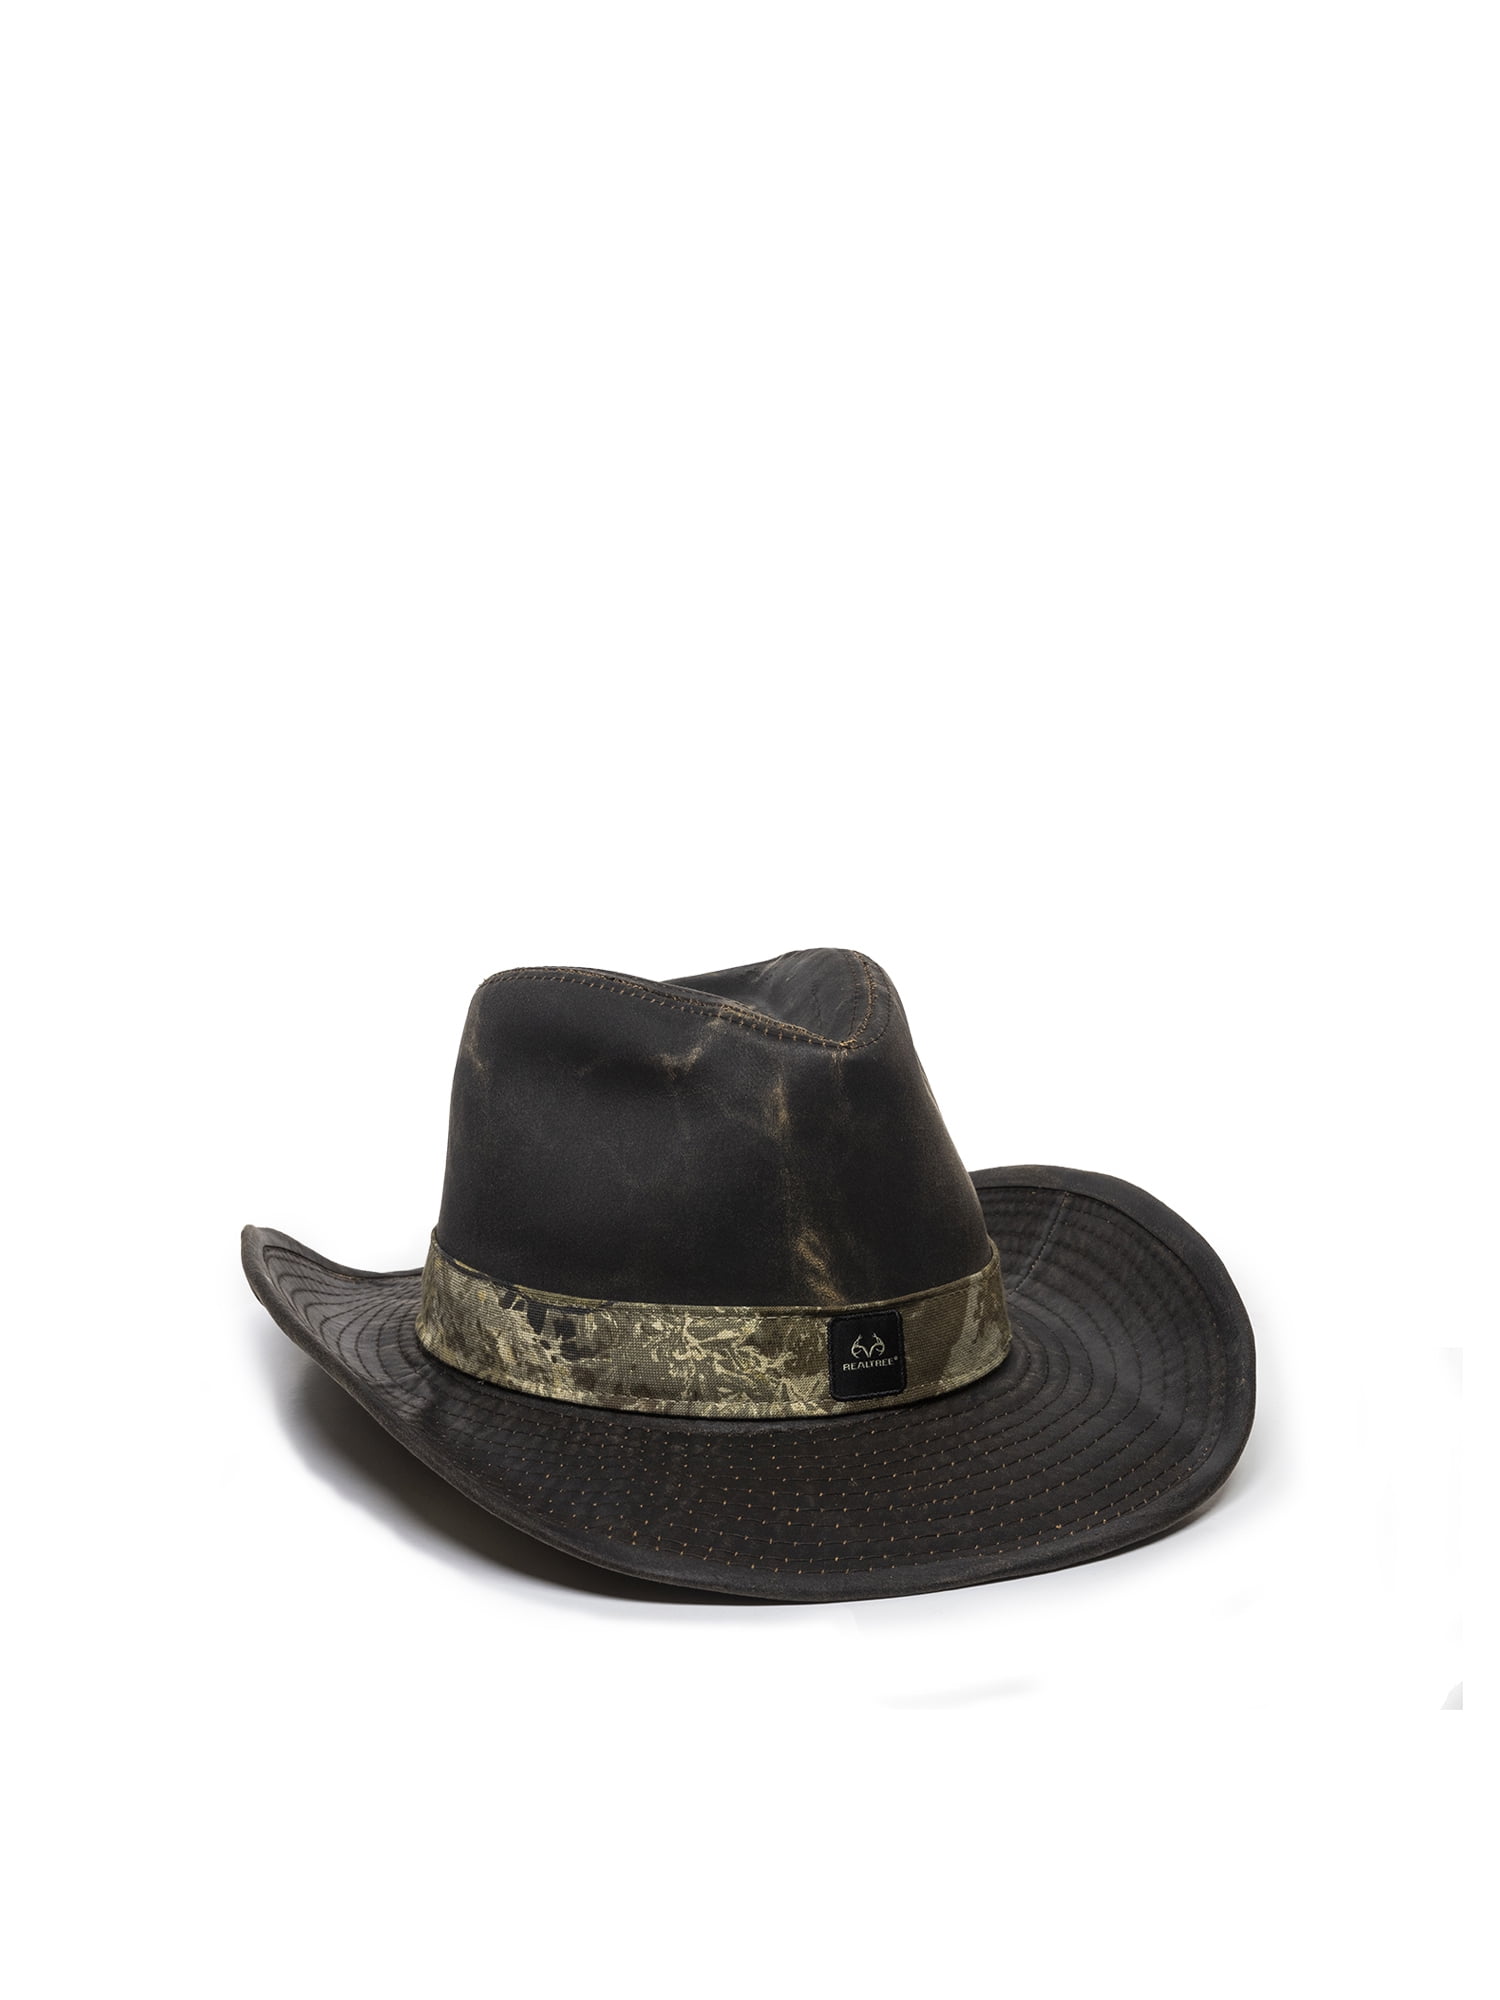 Weathered Fabric Cowboy Hat - Small / Medium - Realtree Max-1 XT ...